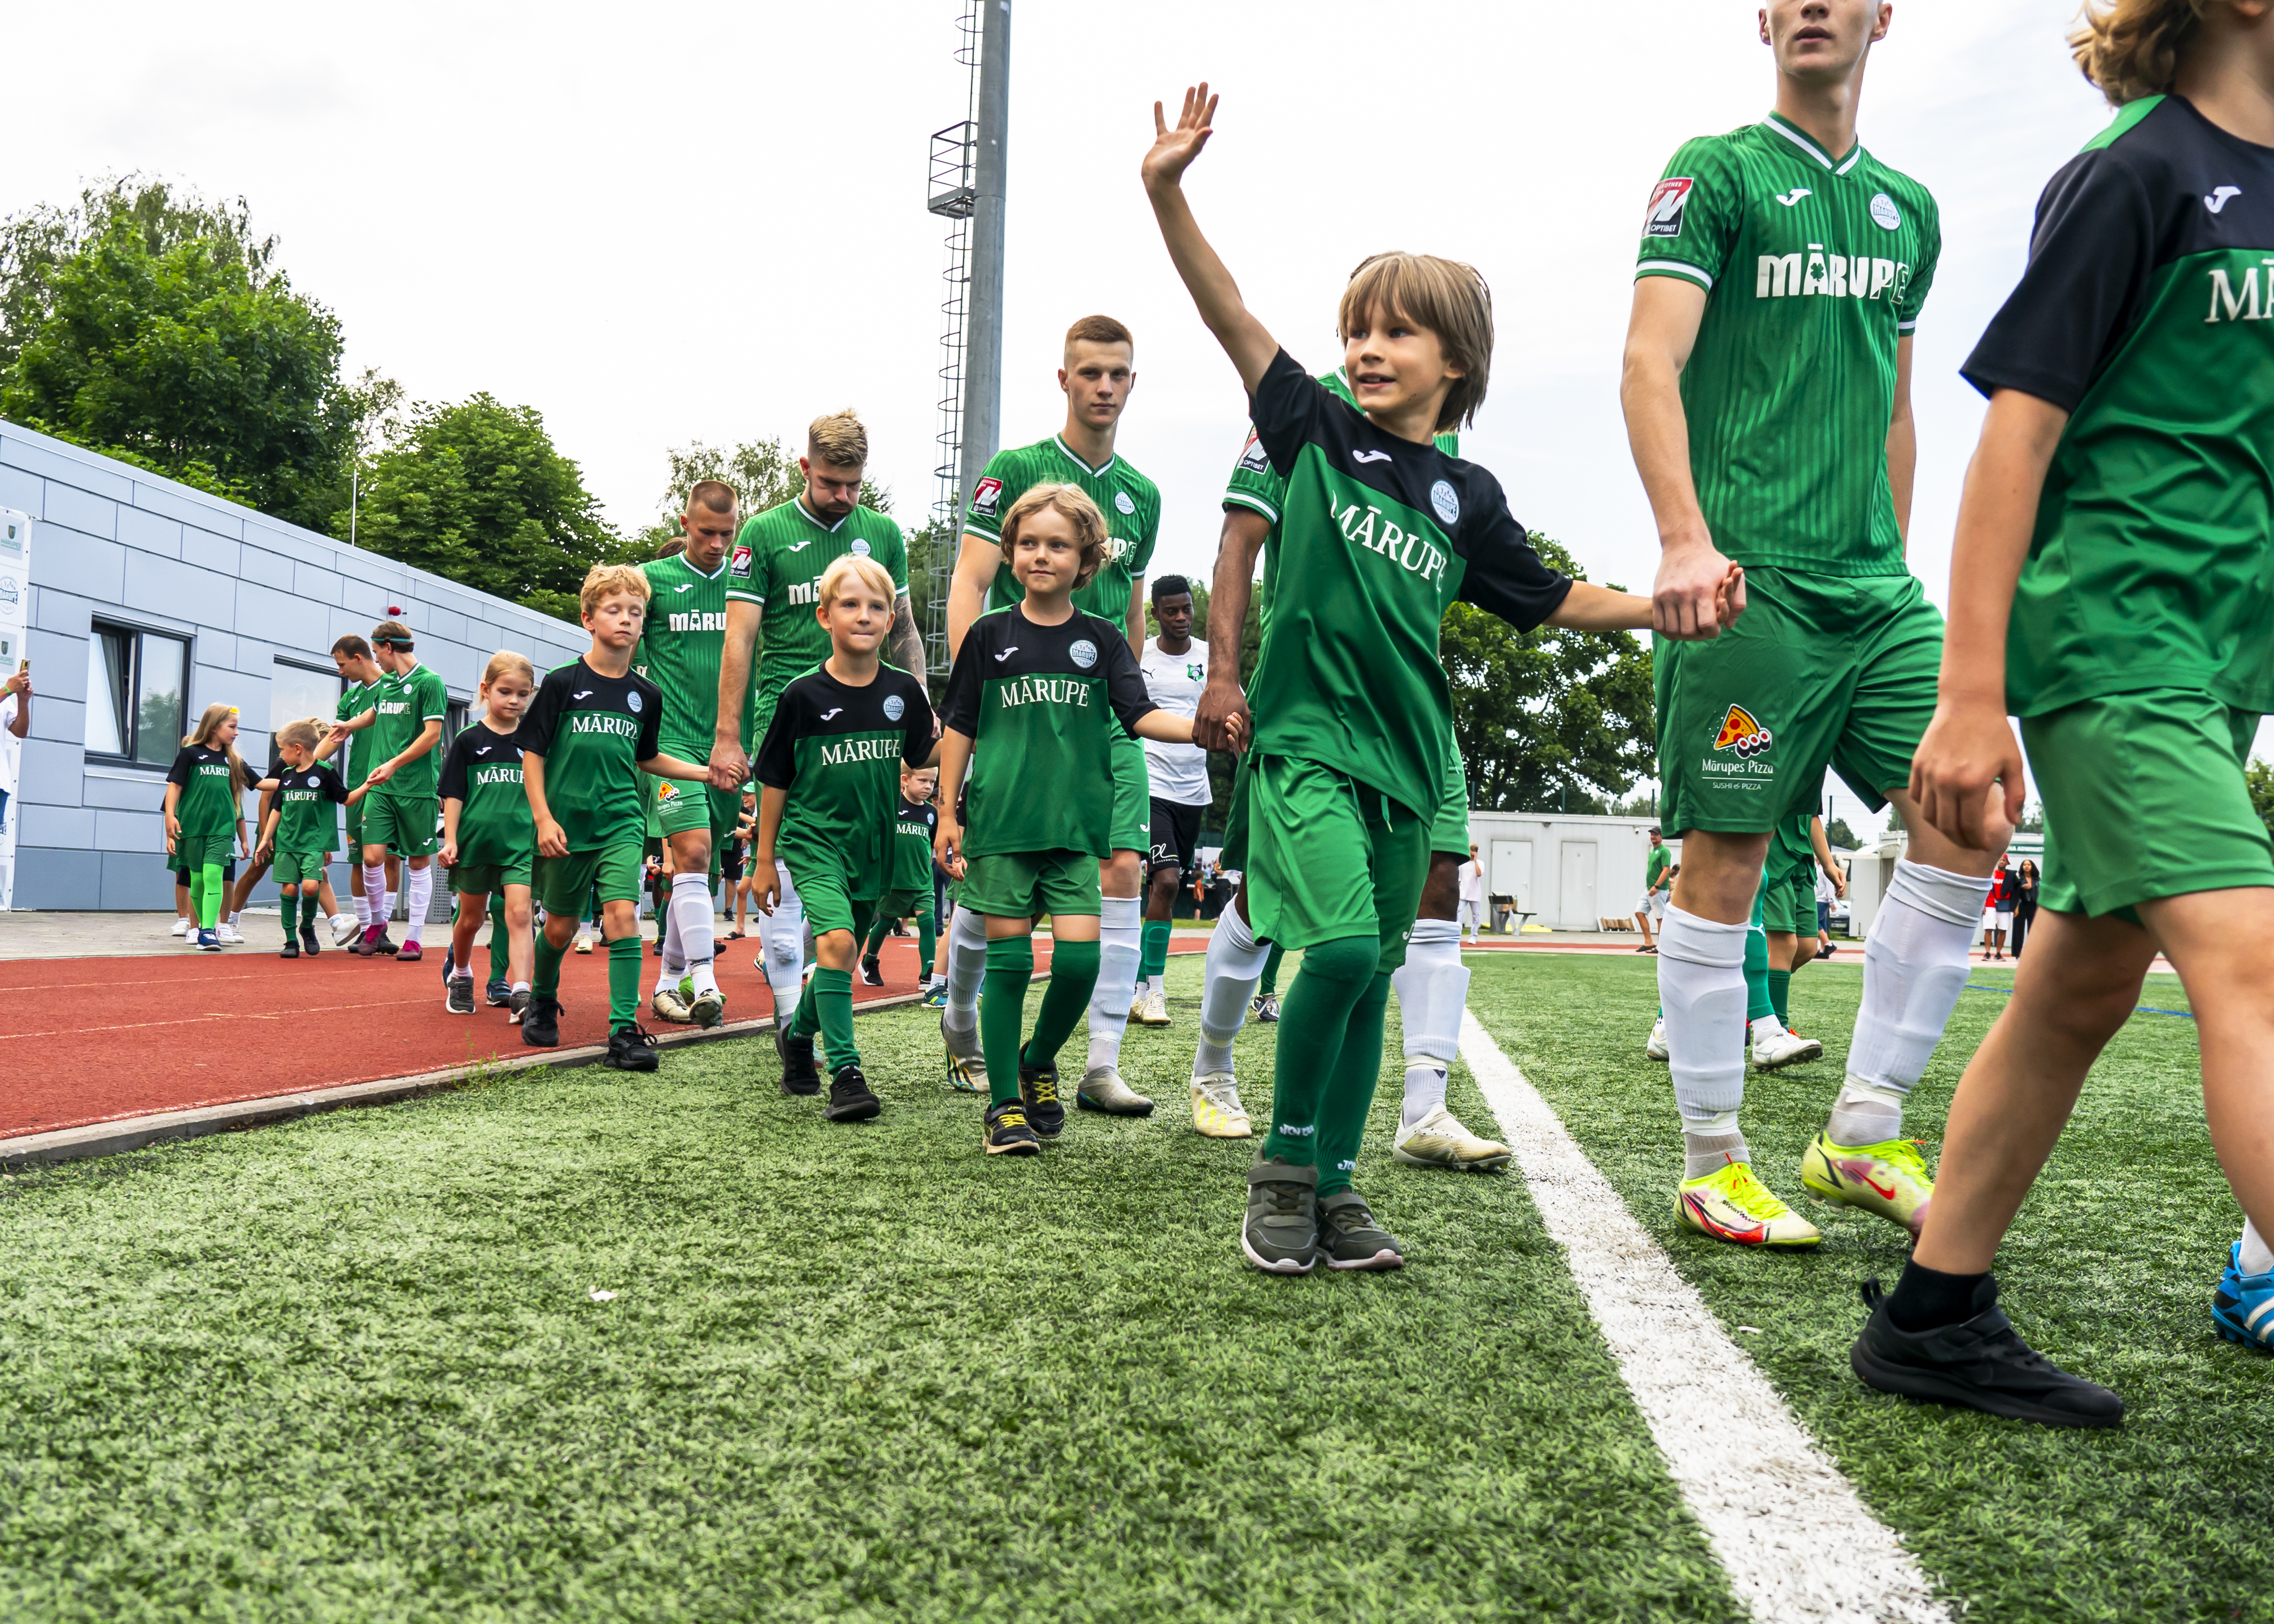 Bērni zaļos futbolistu tērpos pavada uz spēles laukuma lielos futbolistus